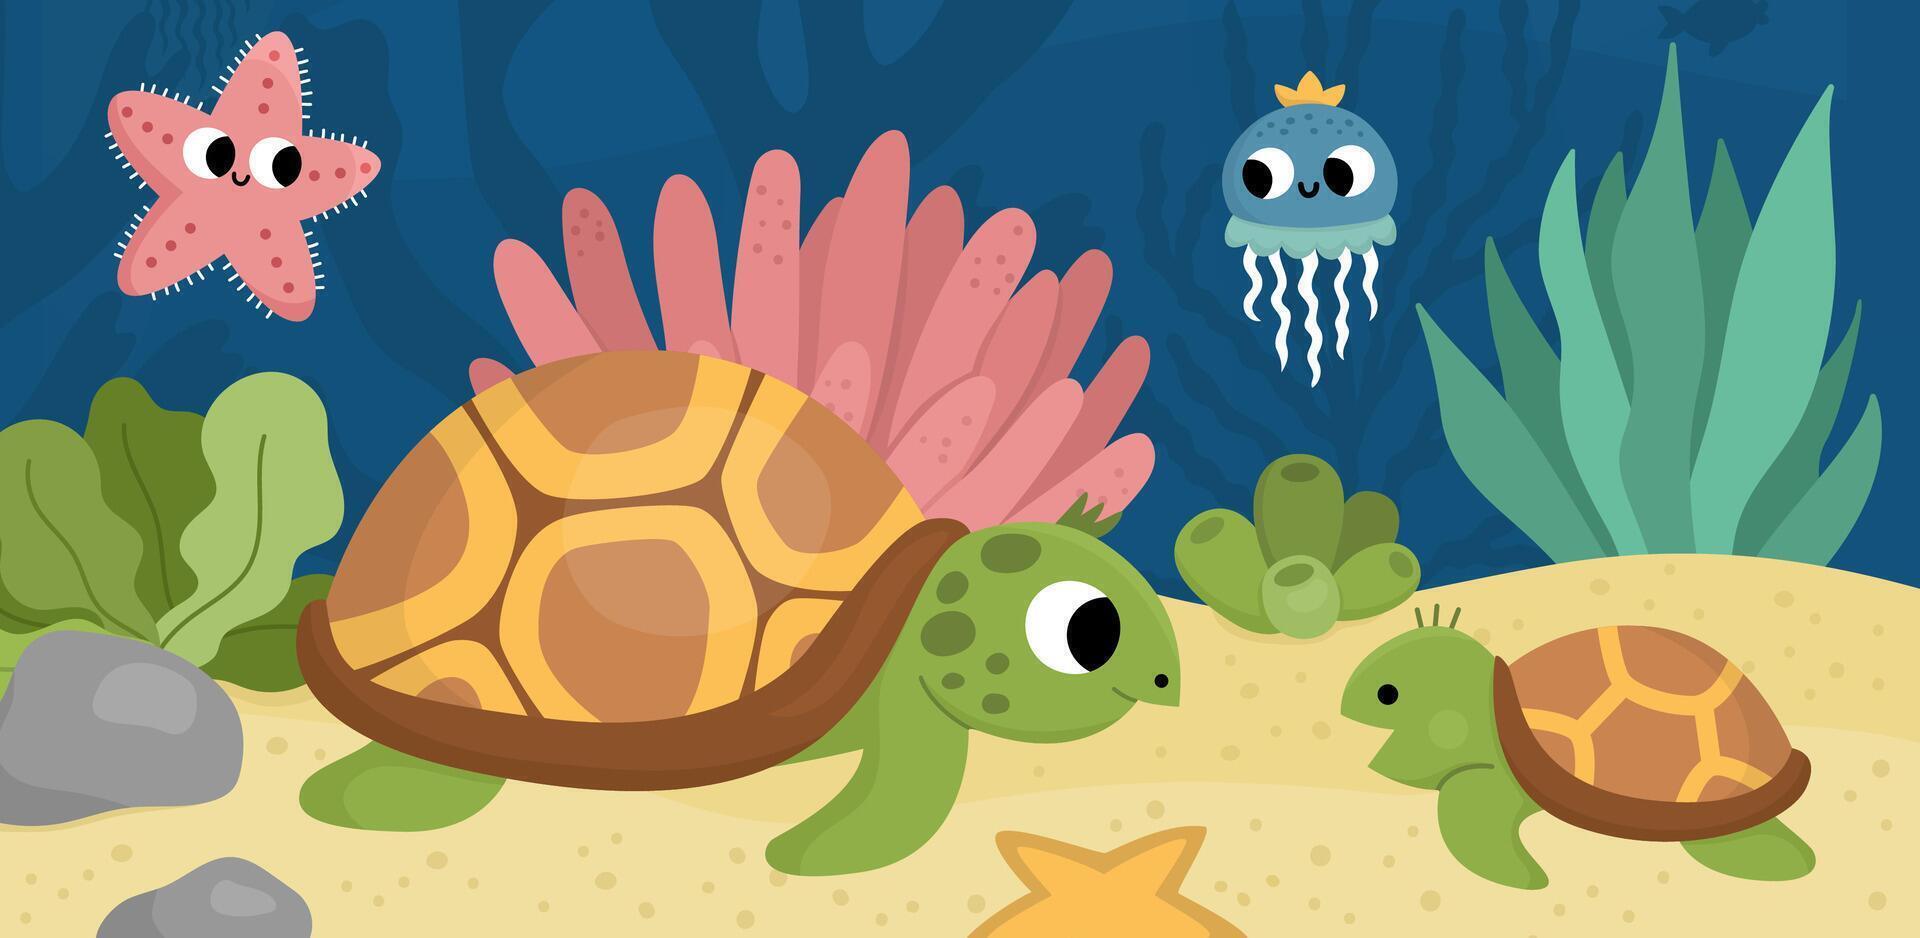 Vektor unter das Meer Landschaft Illustration mit Schildkröte und Baby. Ozean Leben Szene mit Sand, Algen, Korallen, Riffe. süß horizontal Wasser Natur Hintergrund. Wasser- Bild zum Kinder